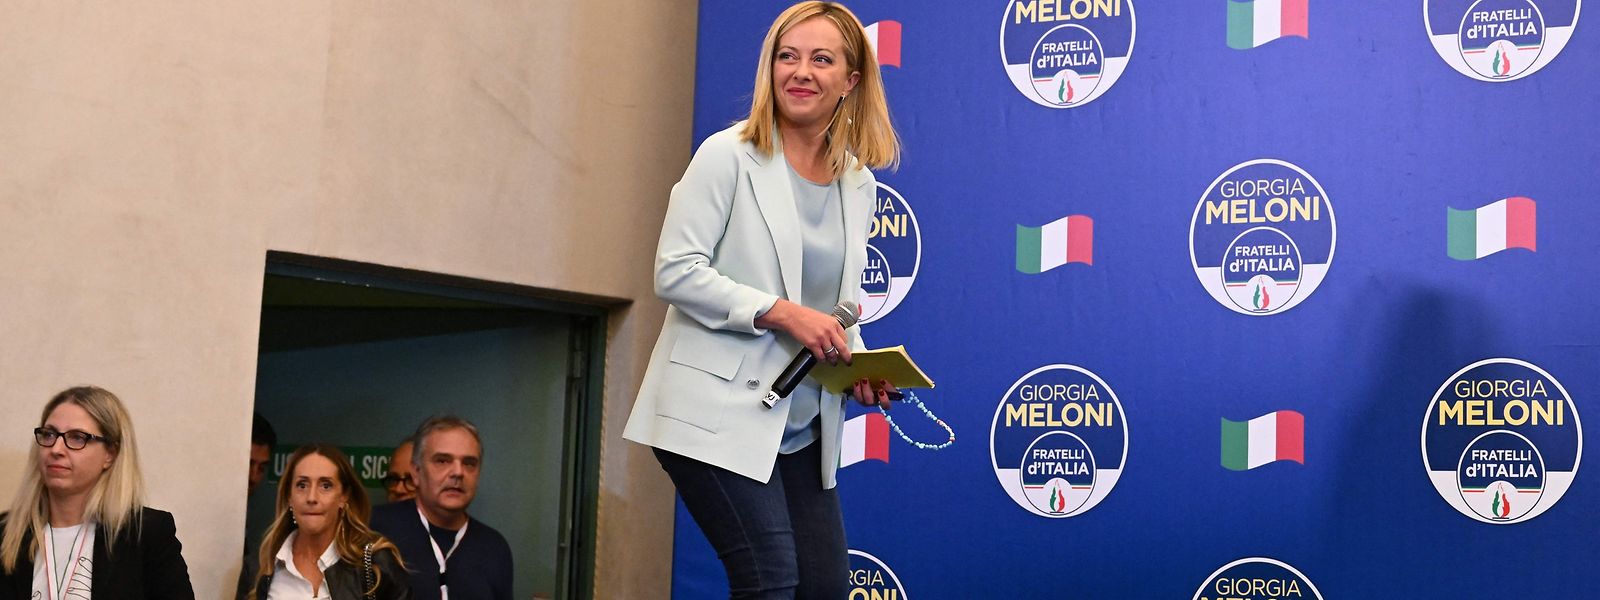 Gerüchte über die künftige Regierungsmannschaft liefern Gesprächsstoff. Prominente Verbündete von Giorgia Meloni könnten leer ausgehen.